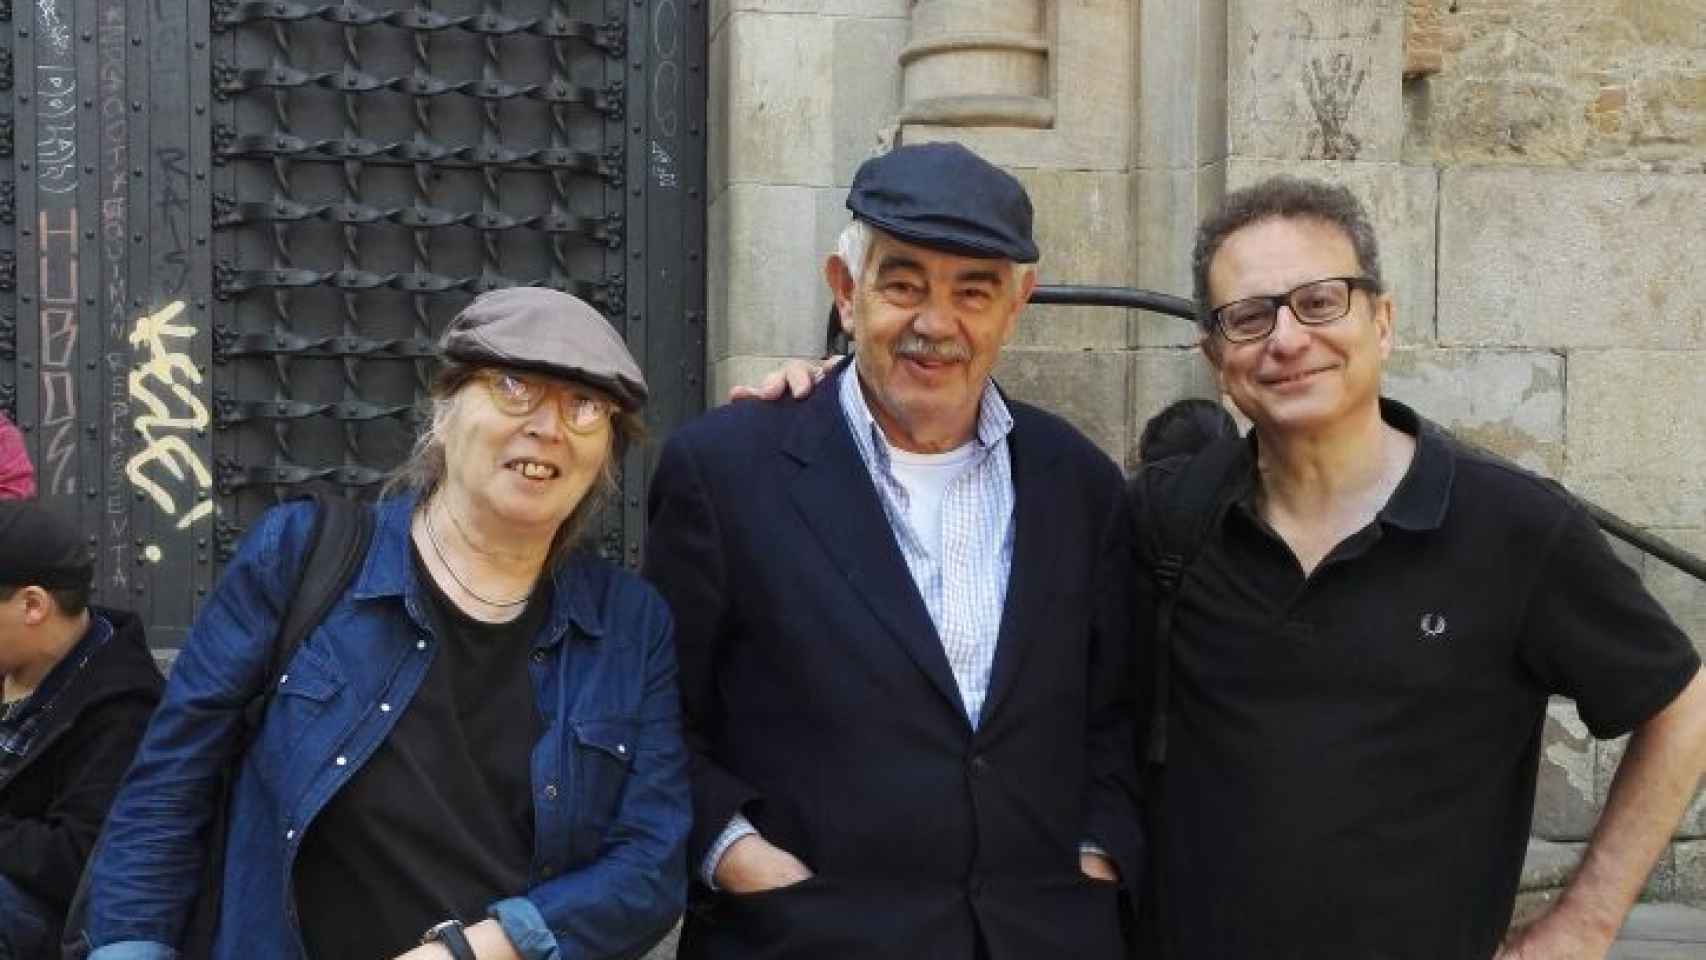 Pasqual Maragall de paseo con sus amigos Àngela Vinent y Àlex Masllorens